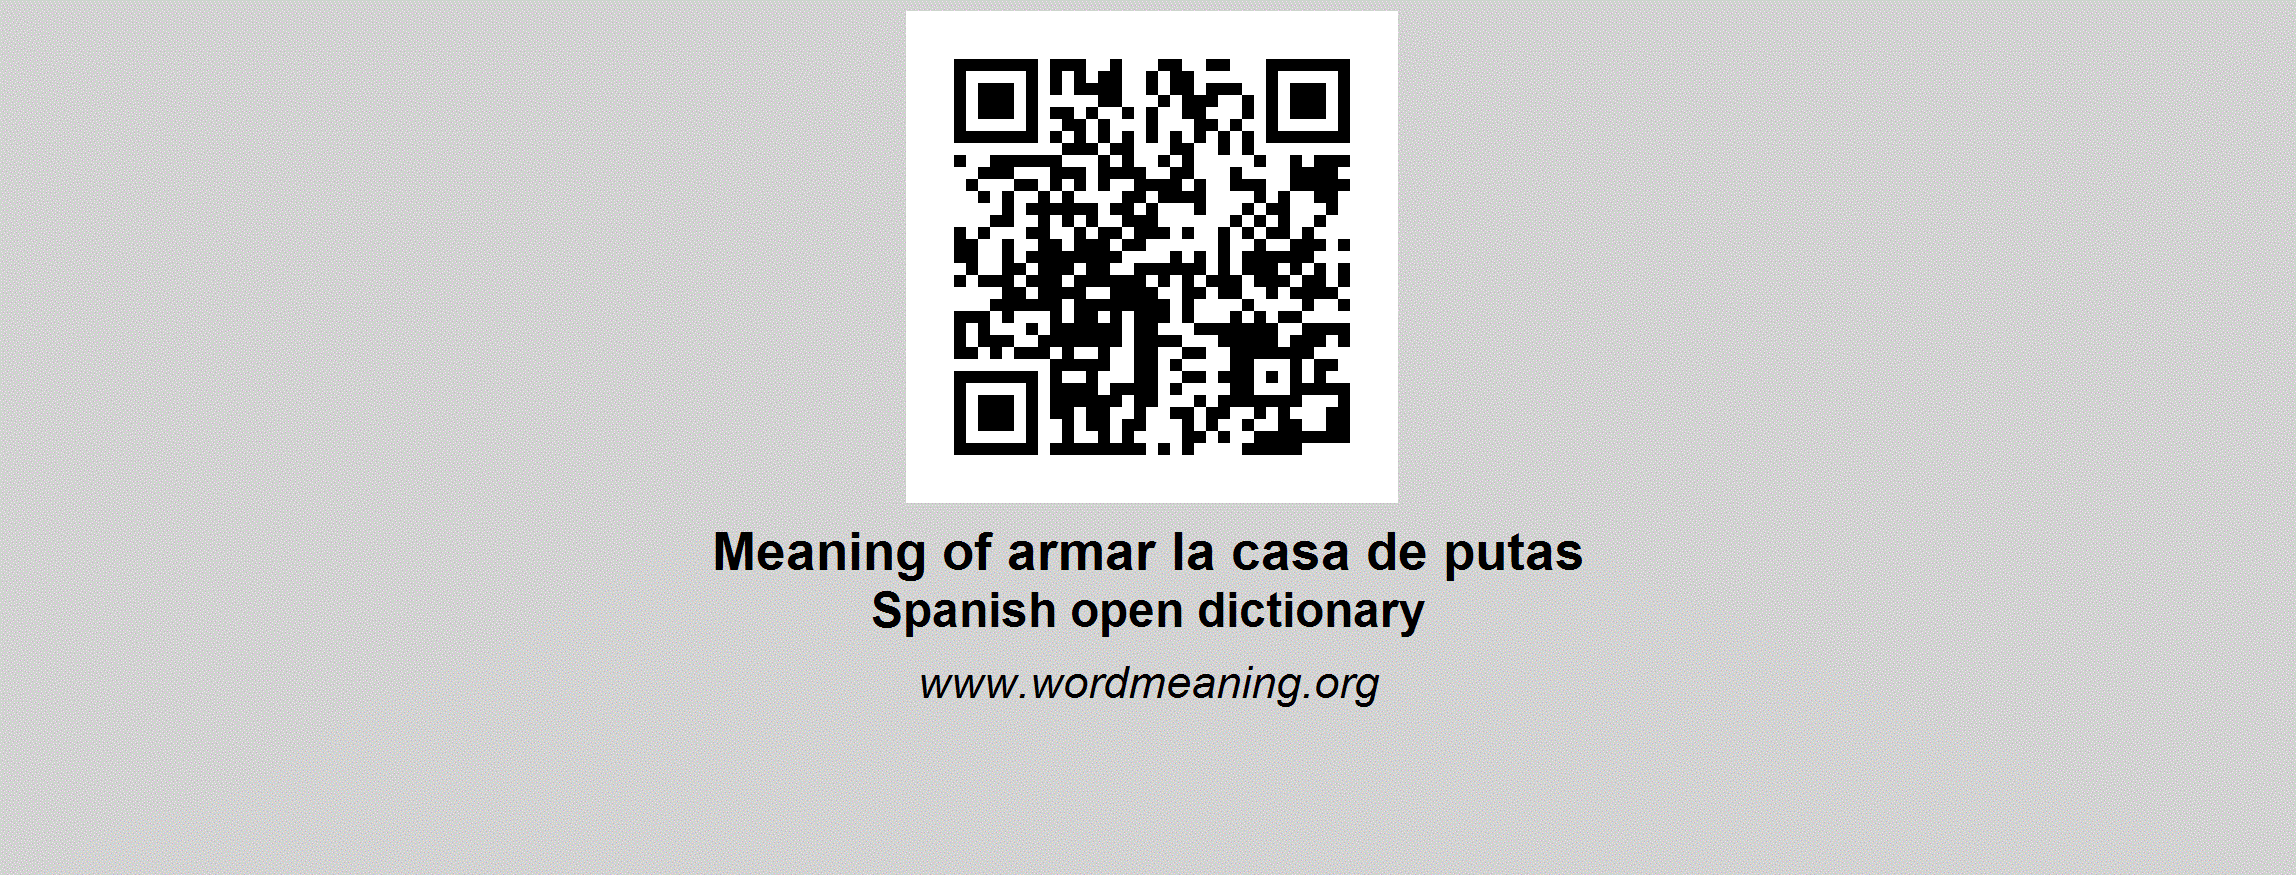 Armar Logo - ARMAR LA CASA DE PUTAS - Spanish open dictionary